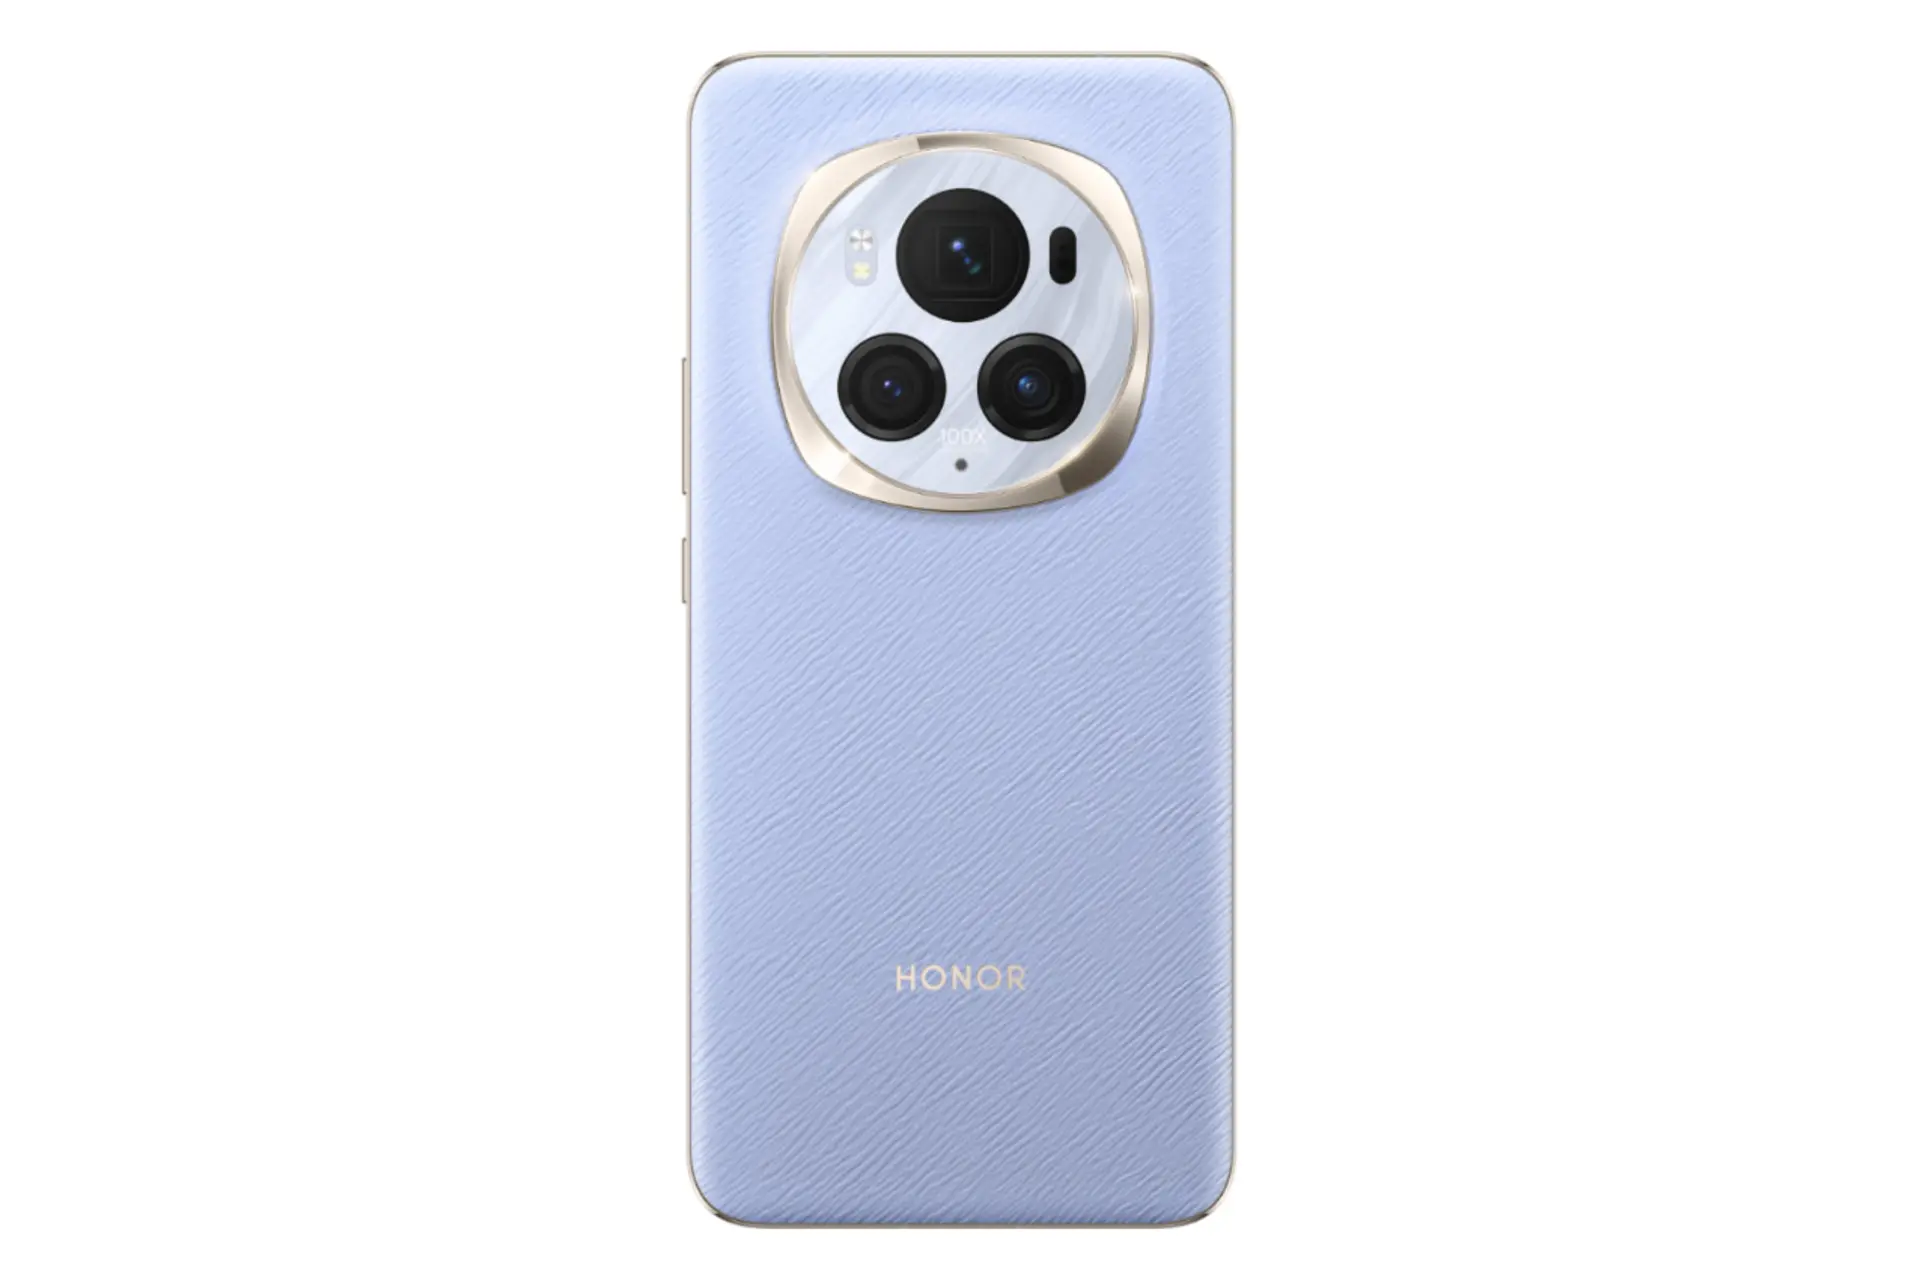 پنل پشت و چینش دوربین گوشی موبایل آنر مجیک 6 پرو بنفش / HONOR Magic6 Pro